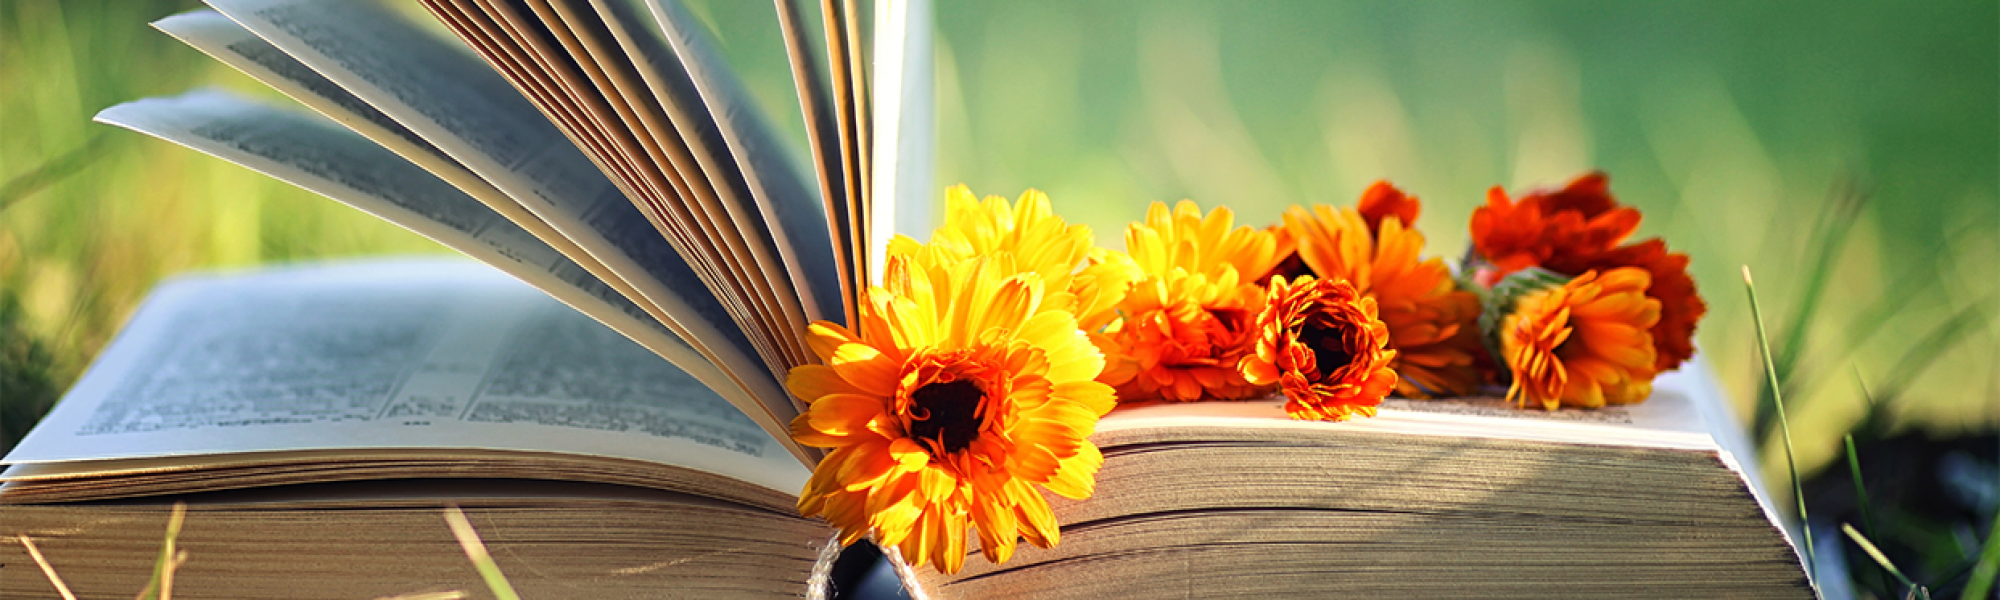 Kuvassa kirja auki ruohikolla, oranssit kukat pitävät jakausta ja osa sivuista on noussut ylös.